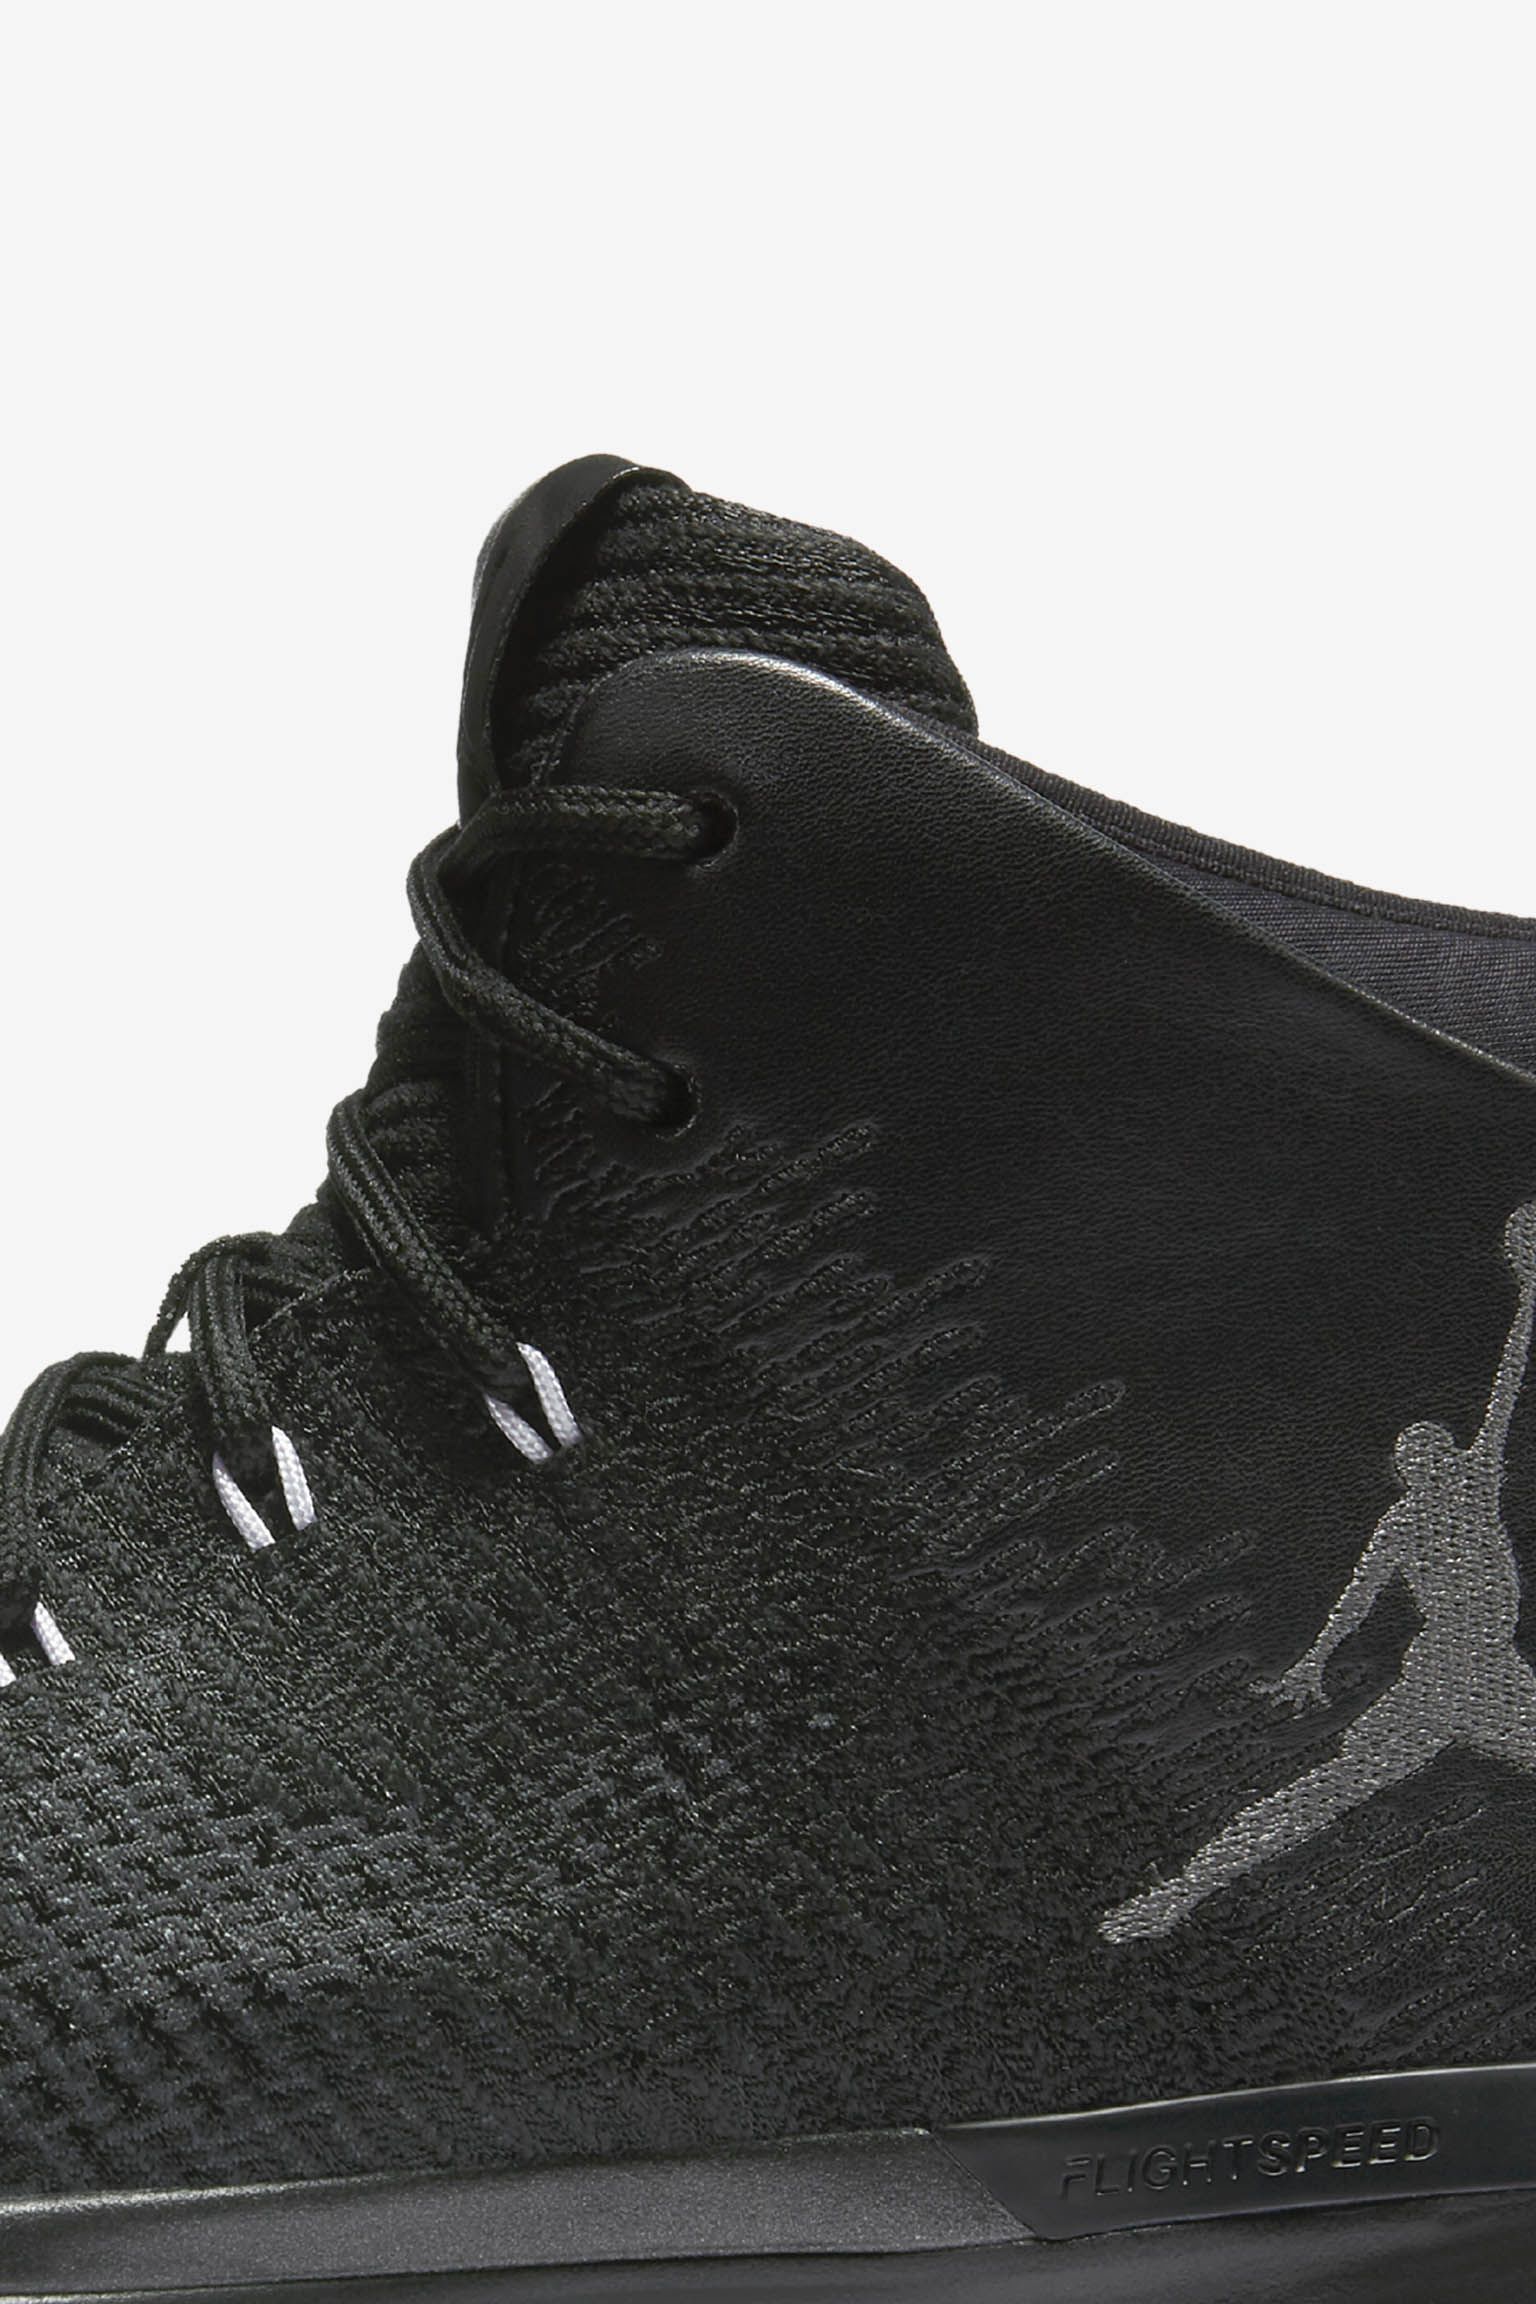 Air Jordan 31 "Black Cat". Nike ES